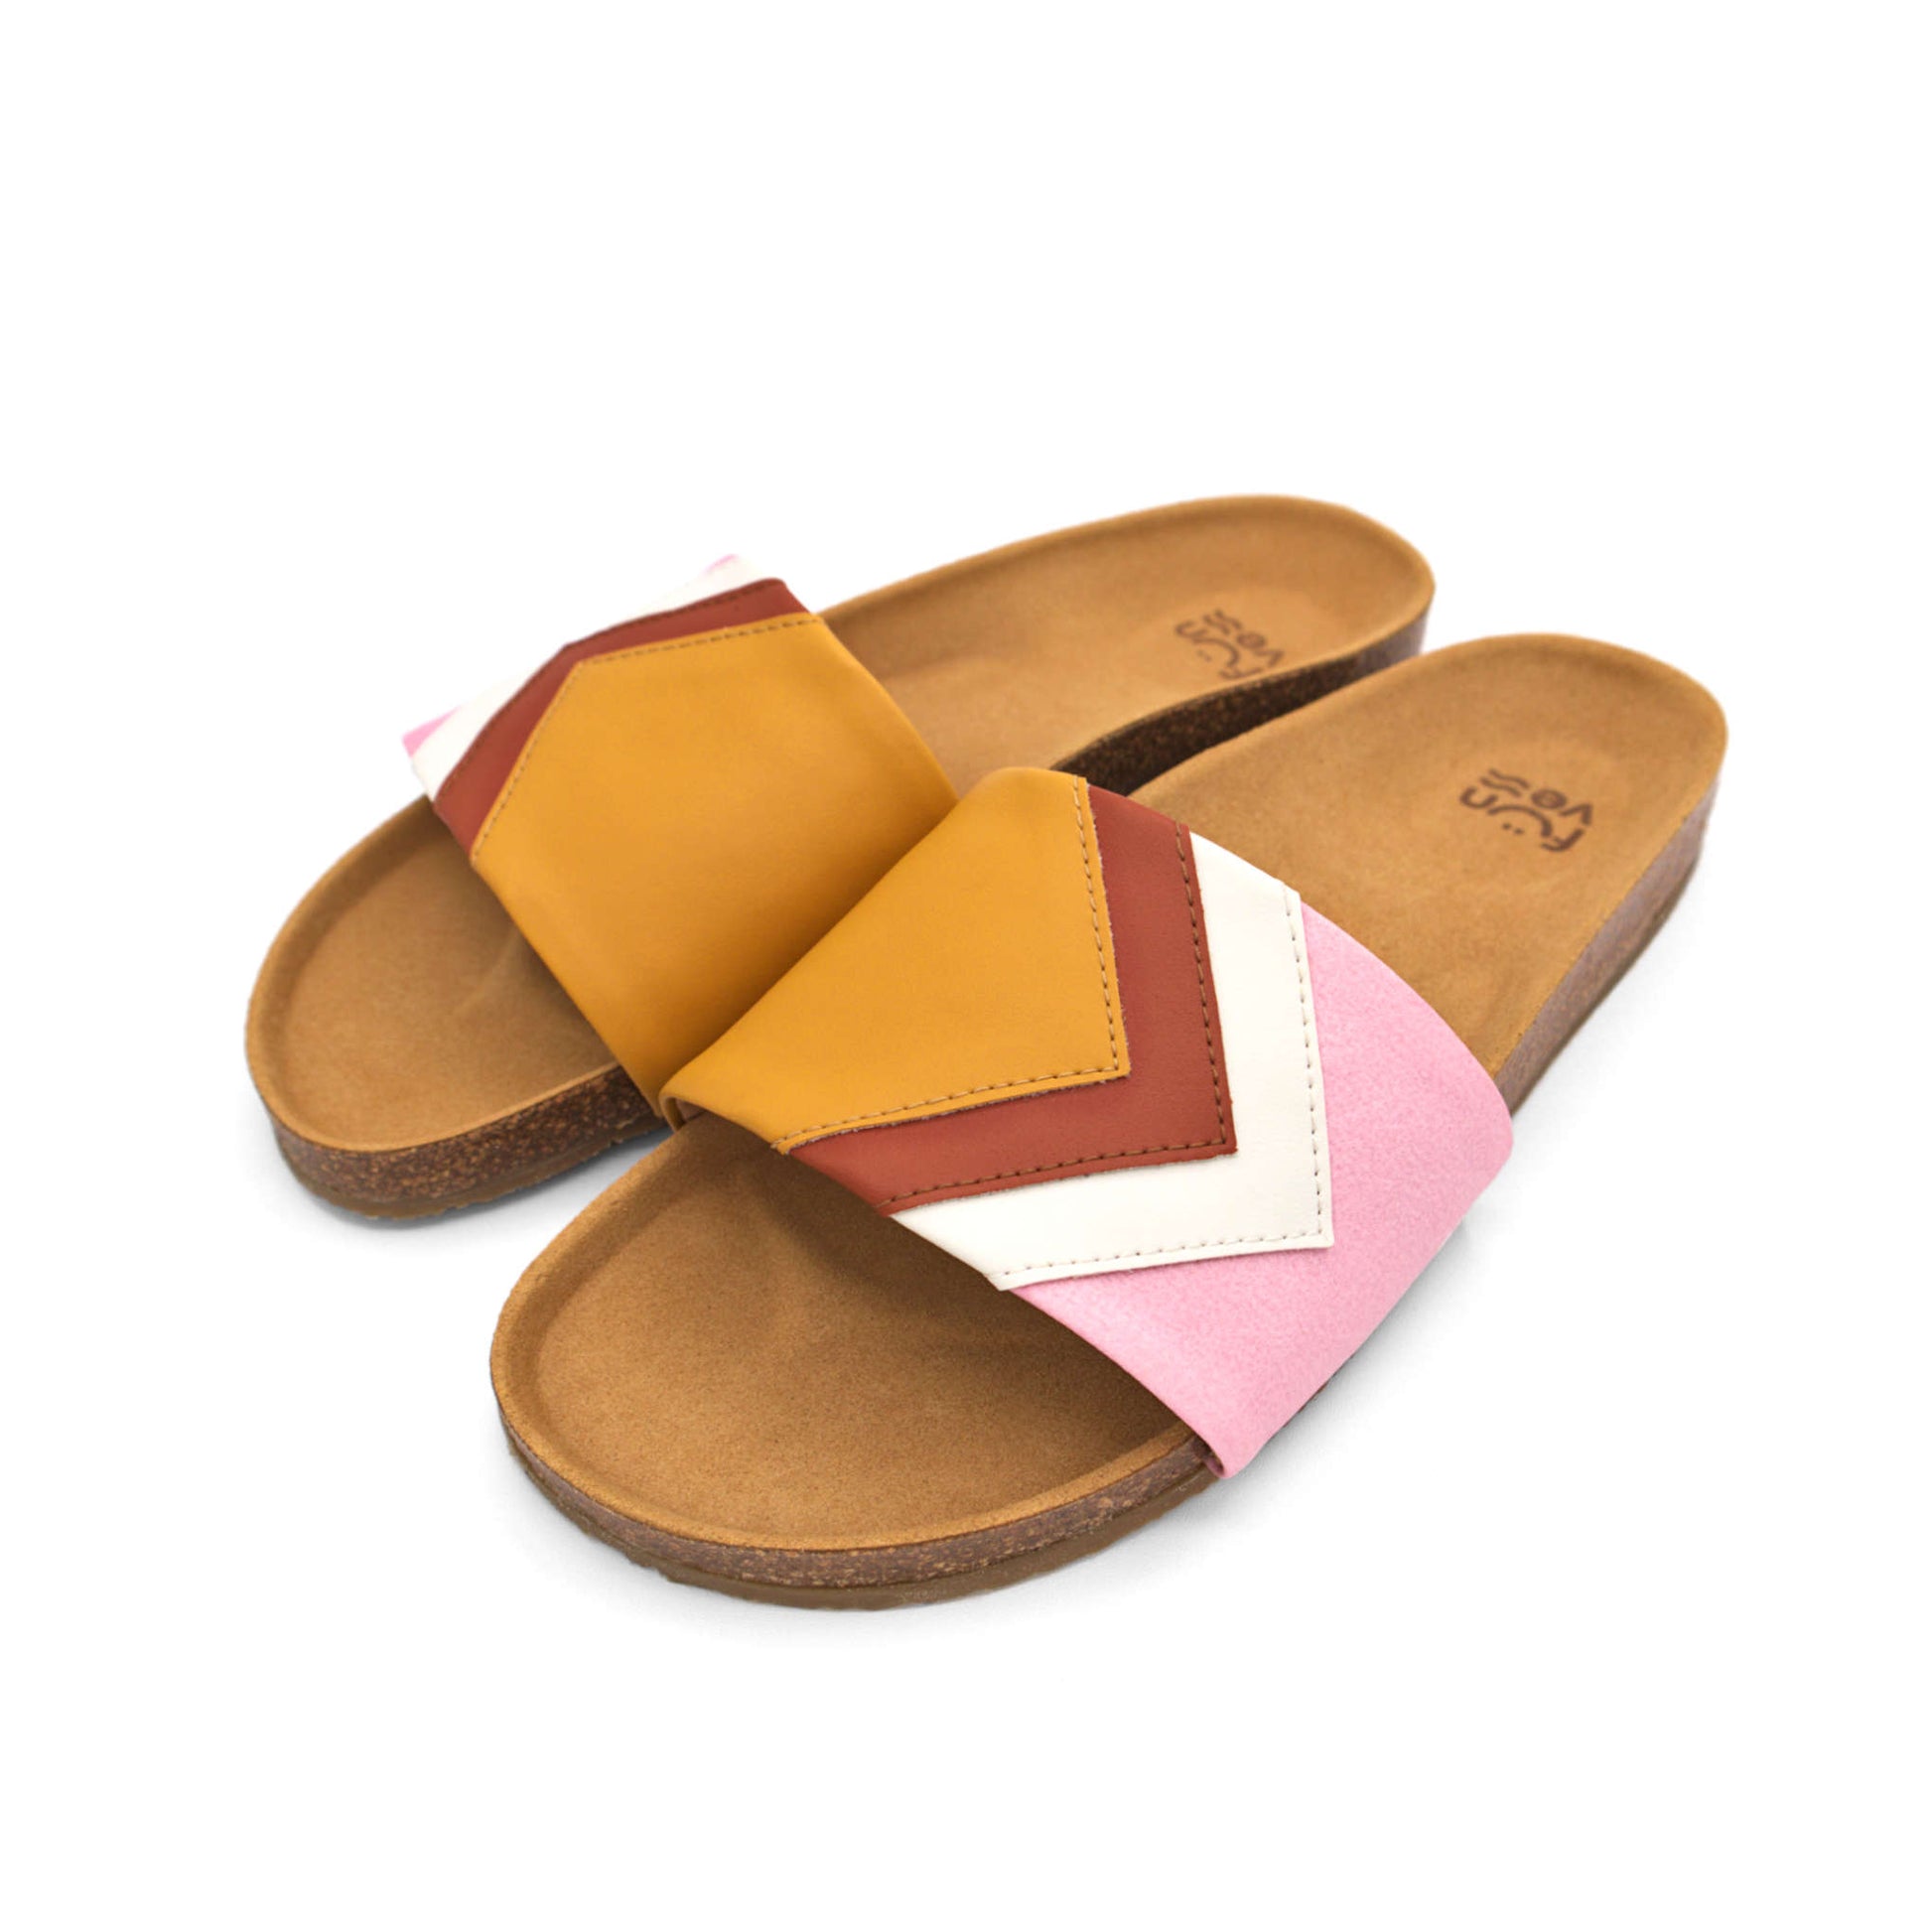 Gelbe Sandalen, vegan mit Fußbett, Farben Senf, Terracotta, Weiß, Rosa; Marke Fünve, Modell Dawn, Seitliche Perspektive